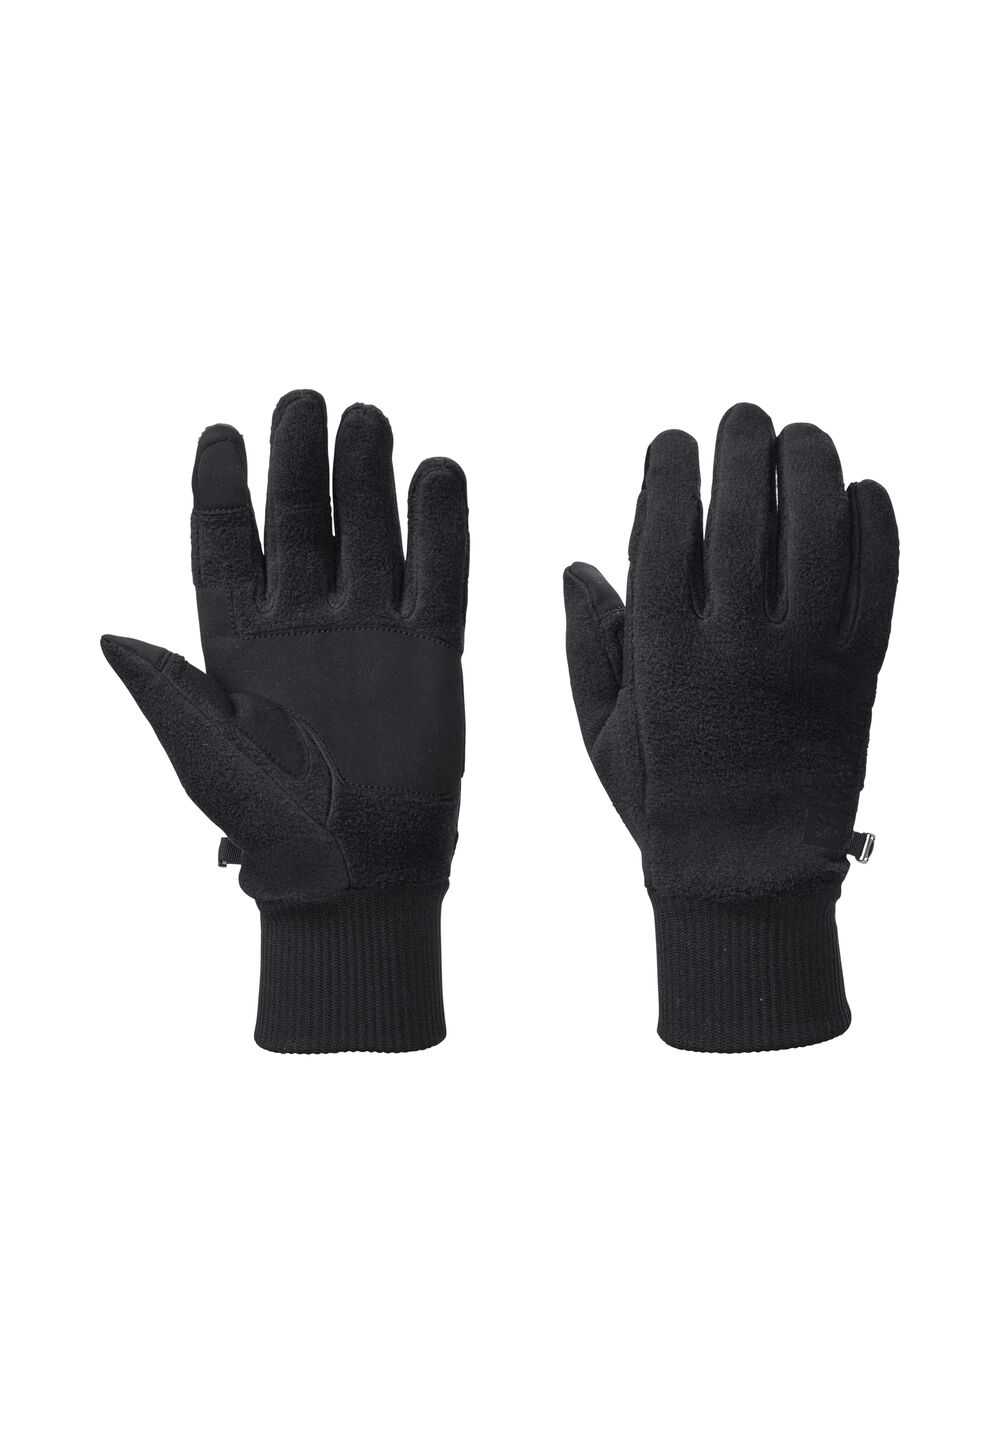 Jack Wolfskin Vertigo Glove Fleece handschoenen L zwart black